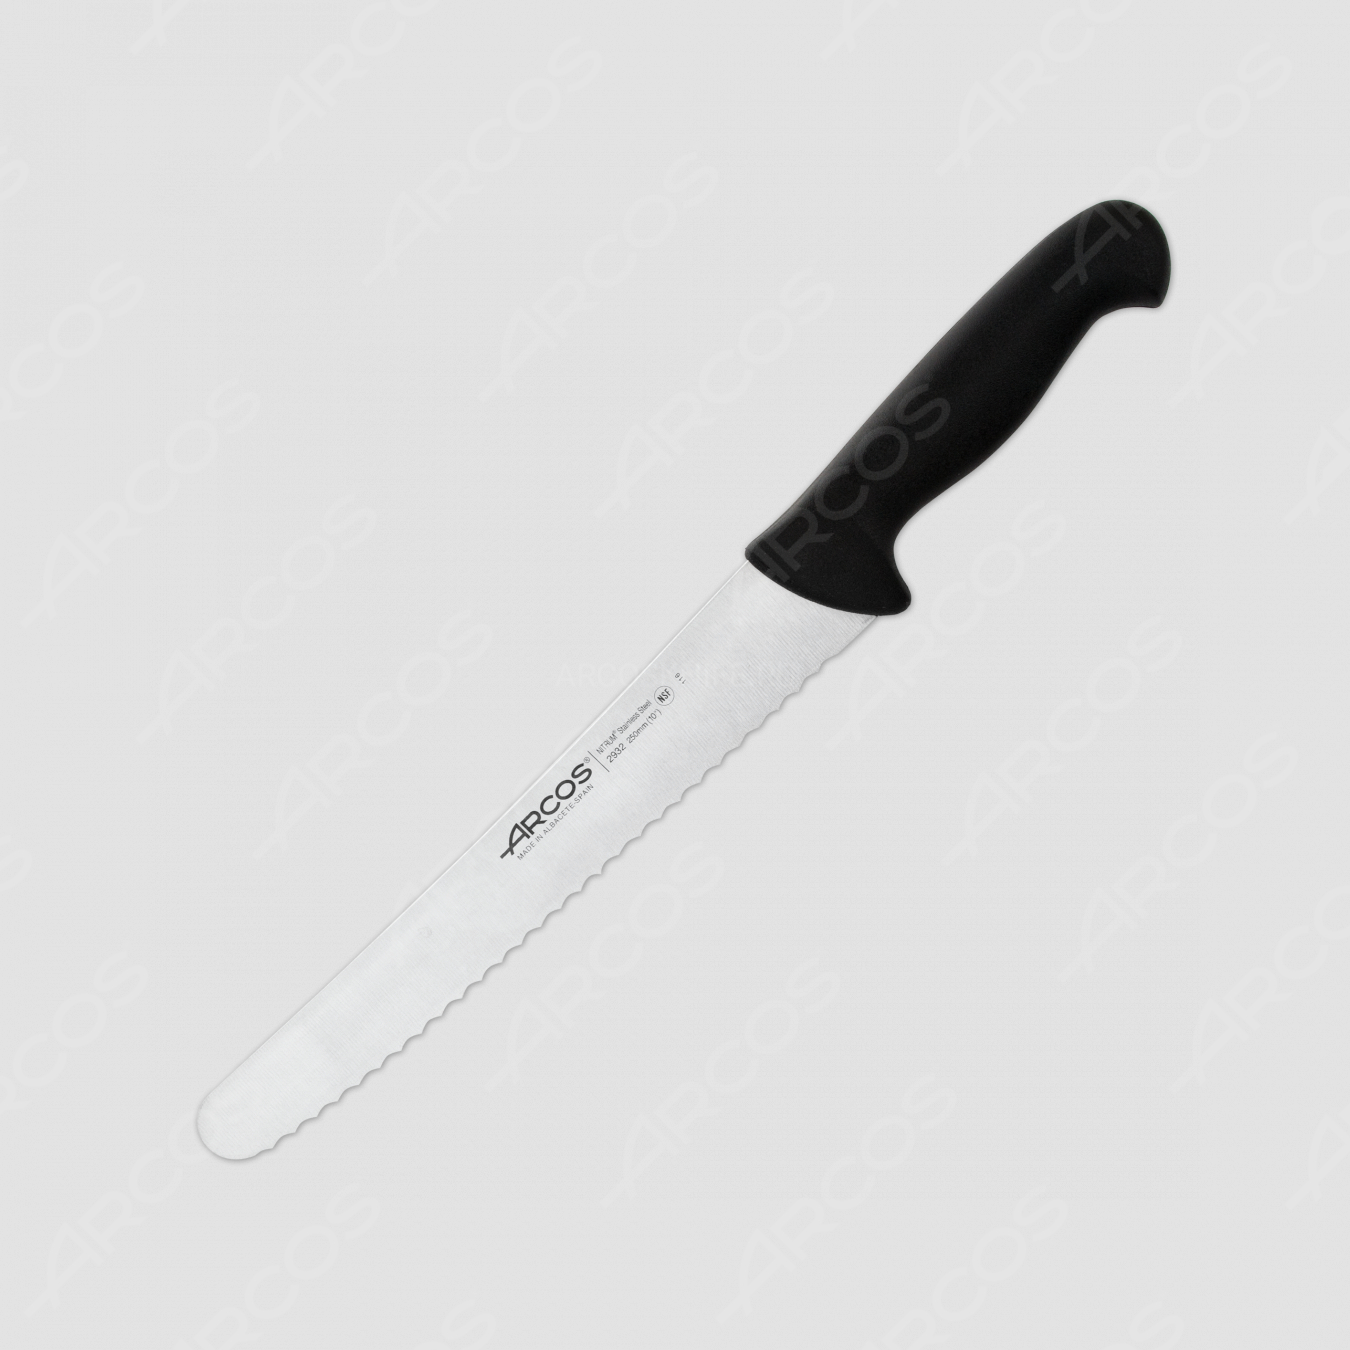 Нож кухонный для кондитерских изделий 25 см, рукоять - черная, серия 2900, ARCOS, Испания